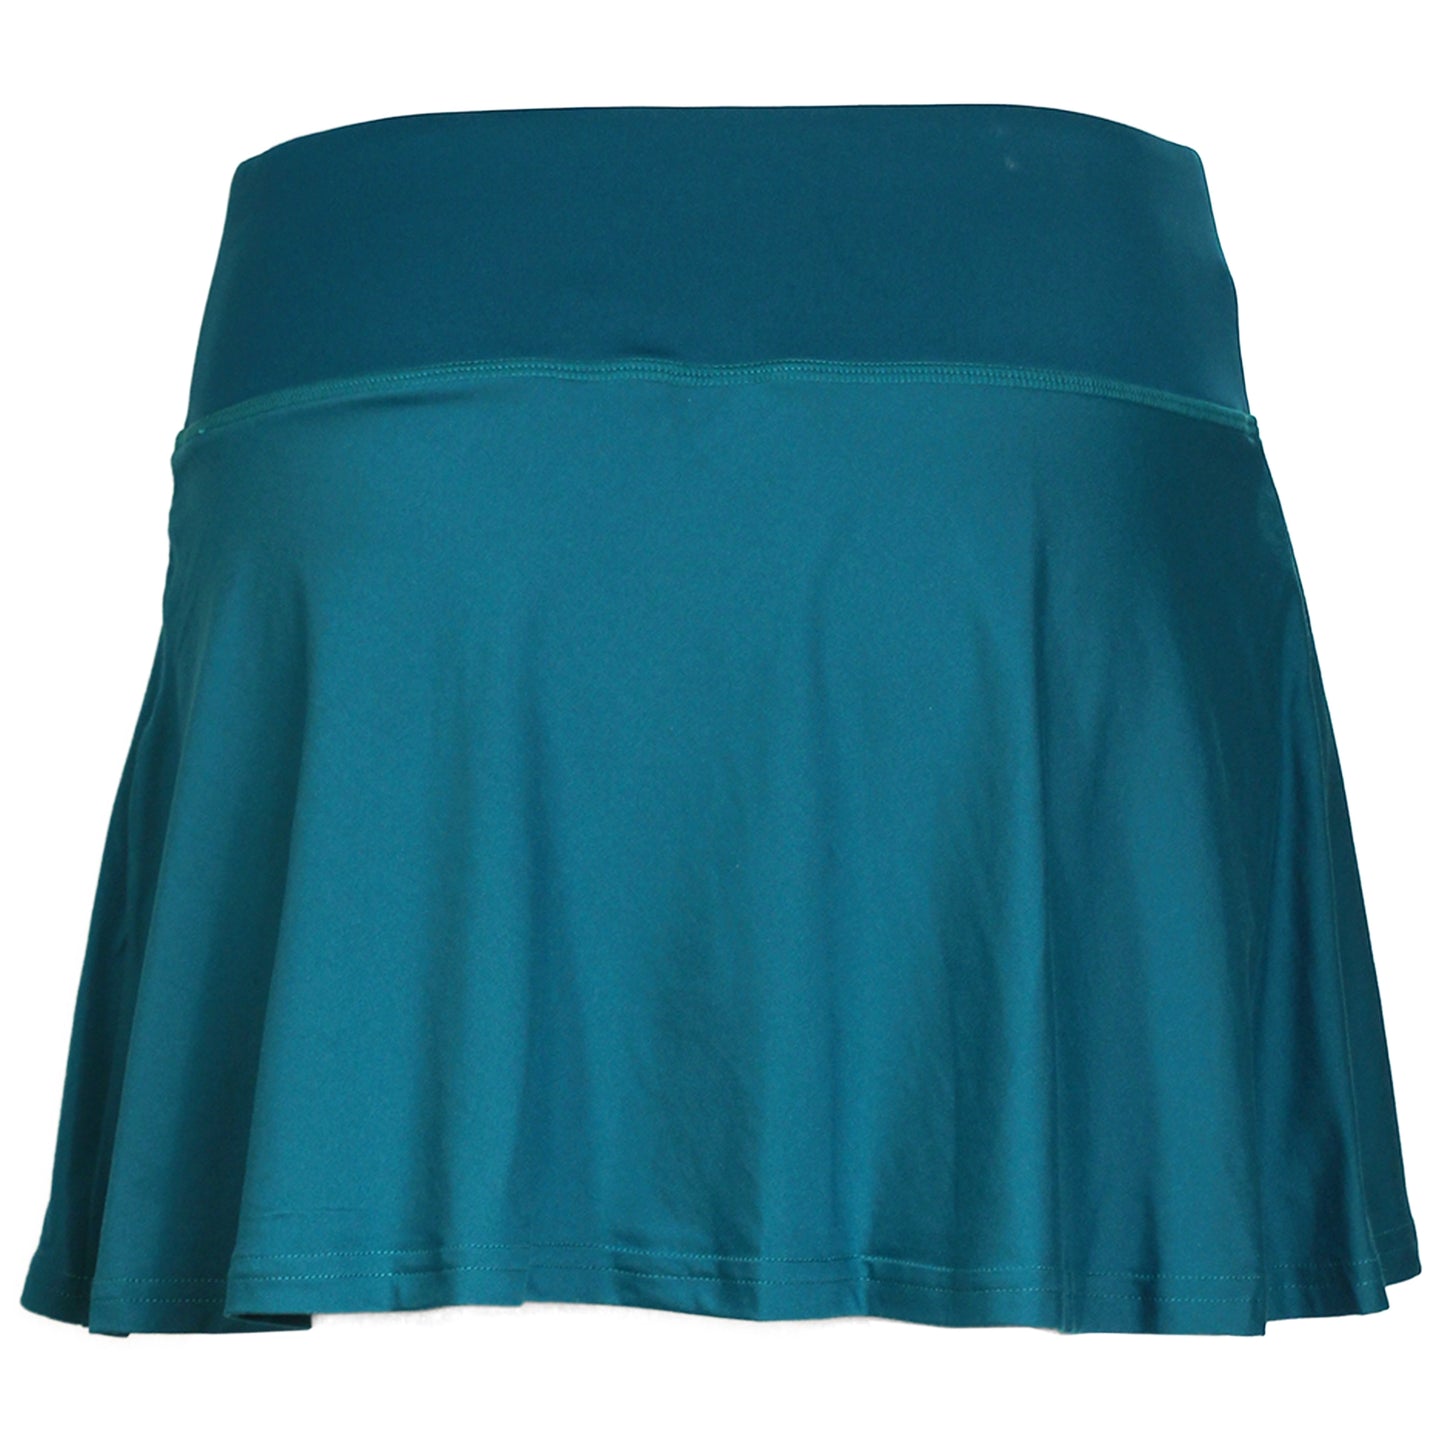 Yonex Women's AO Skirt 26120 Blue Green